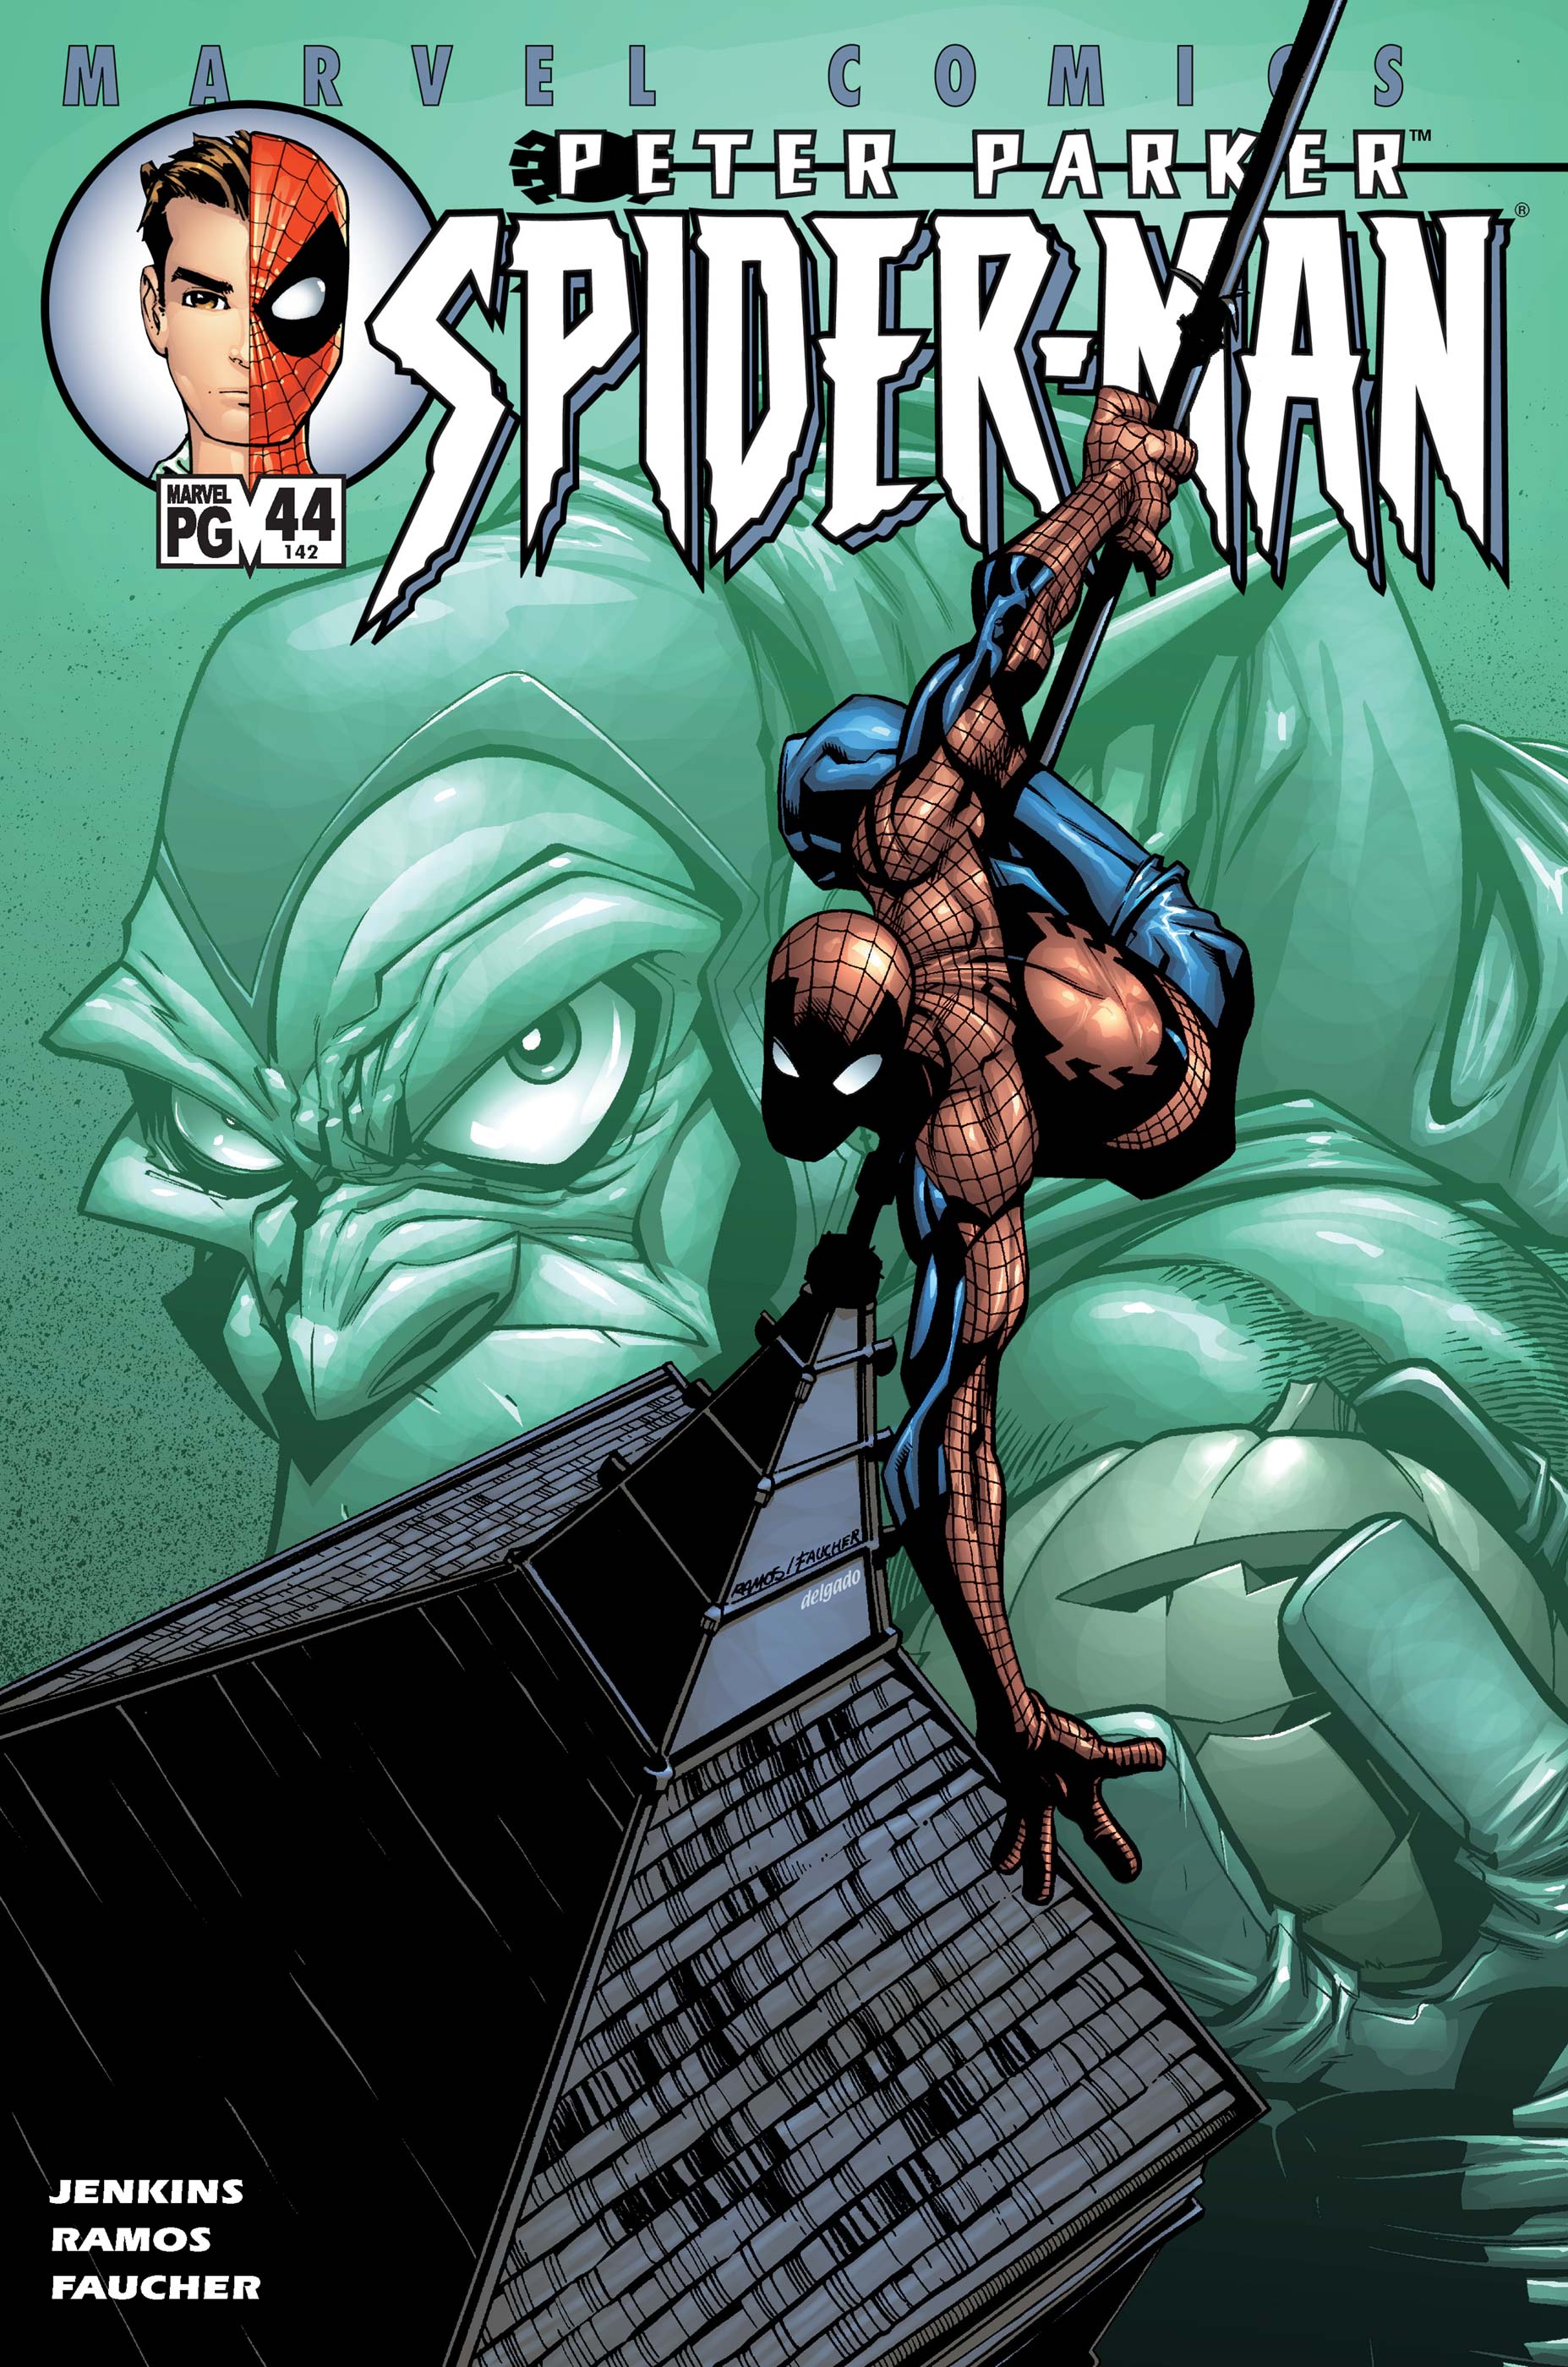 PETER PARKER SPIDER-MAN #44#45#46#47 - MARVEL COMICS (2002)